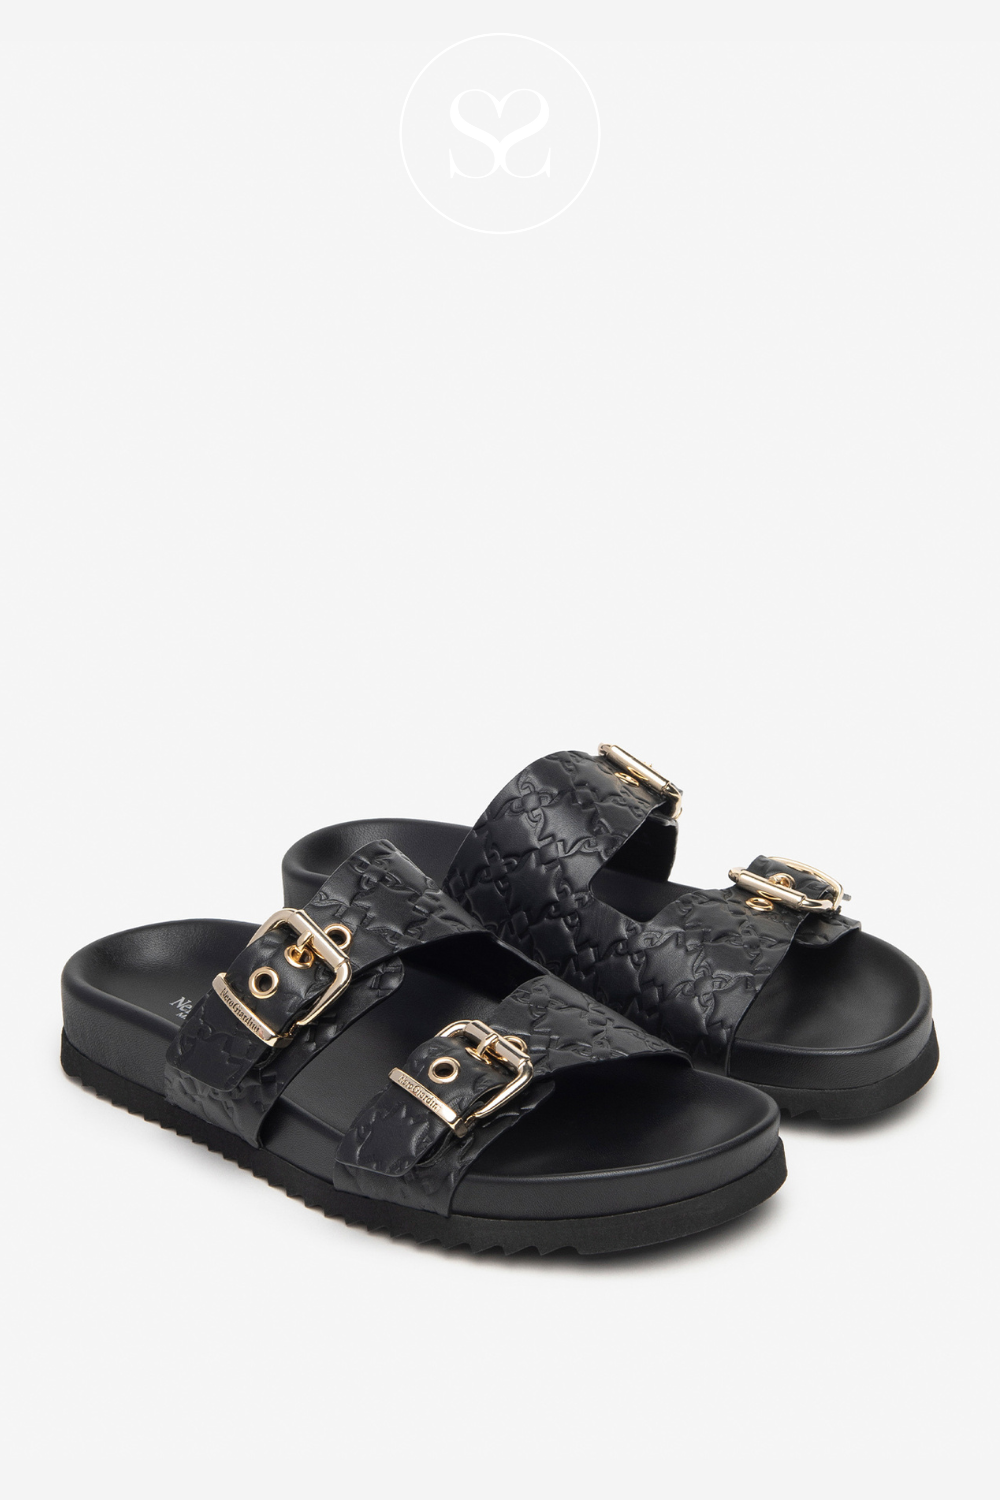 Nero Giardini e410500d slider sandals in black leather